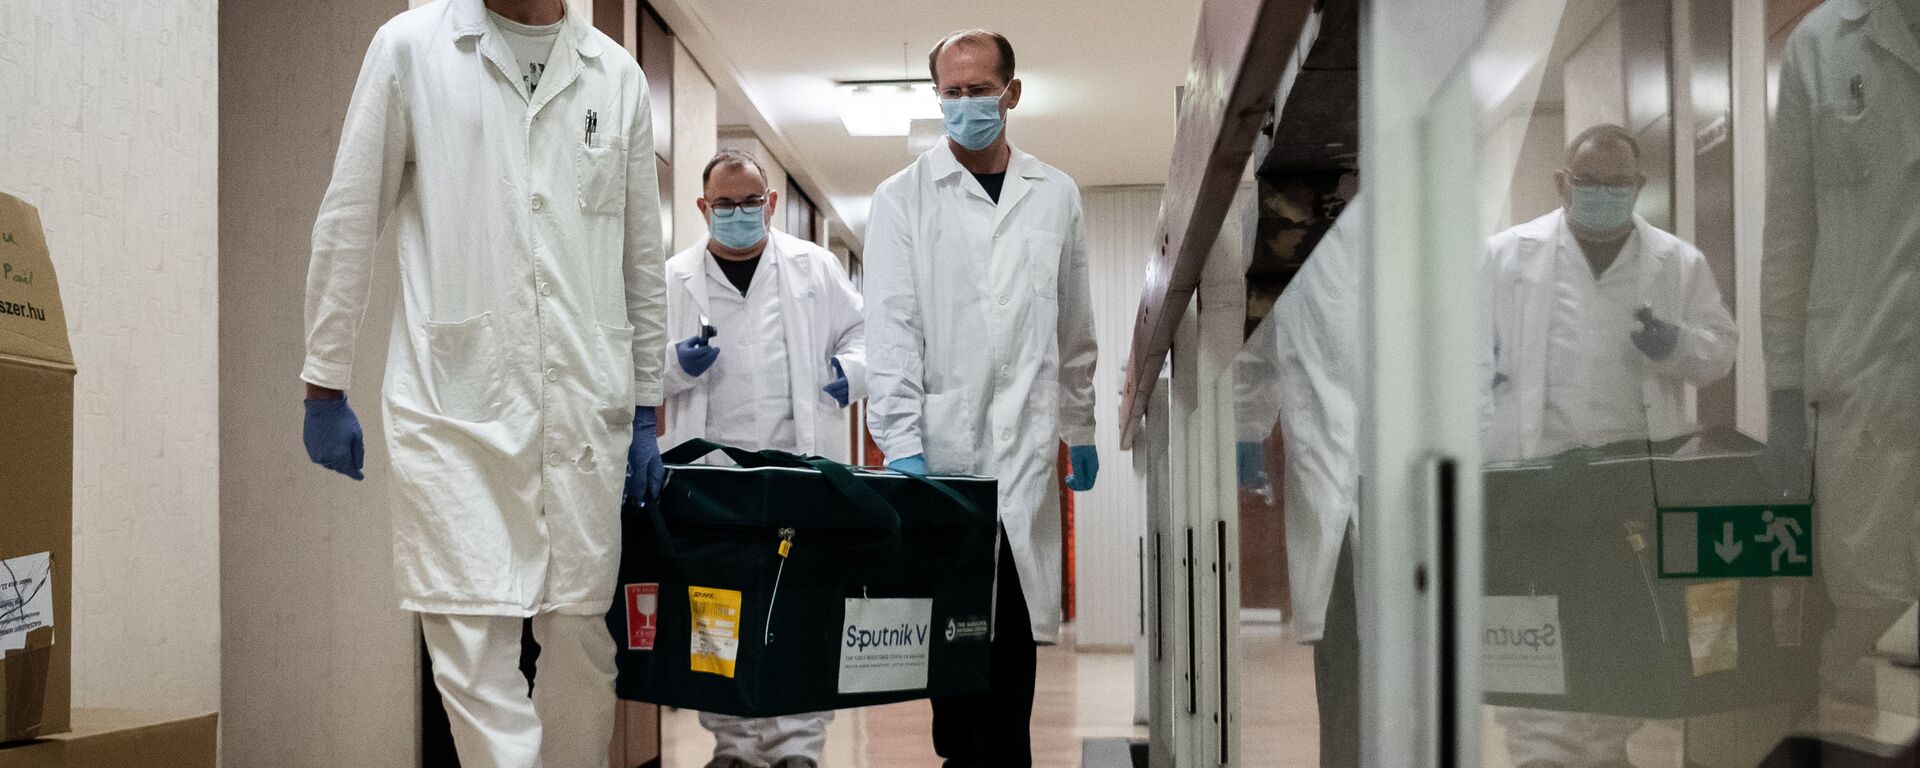 تسليم لقاح سبوتنيك V ضد فيروس كورونا  الروسي إلى المجر لإجراء التجارب السريرية 19 نوفمبر 2020 - سبوتنيك عربي, 1920, 17.11.2021